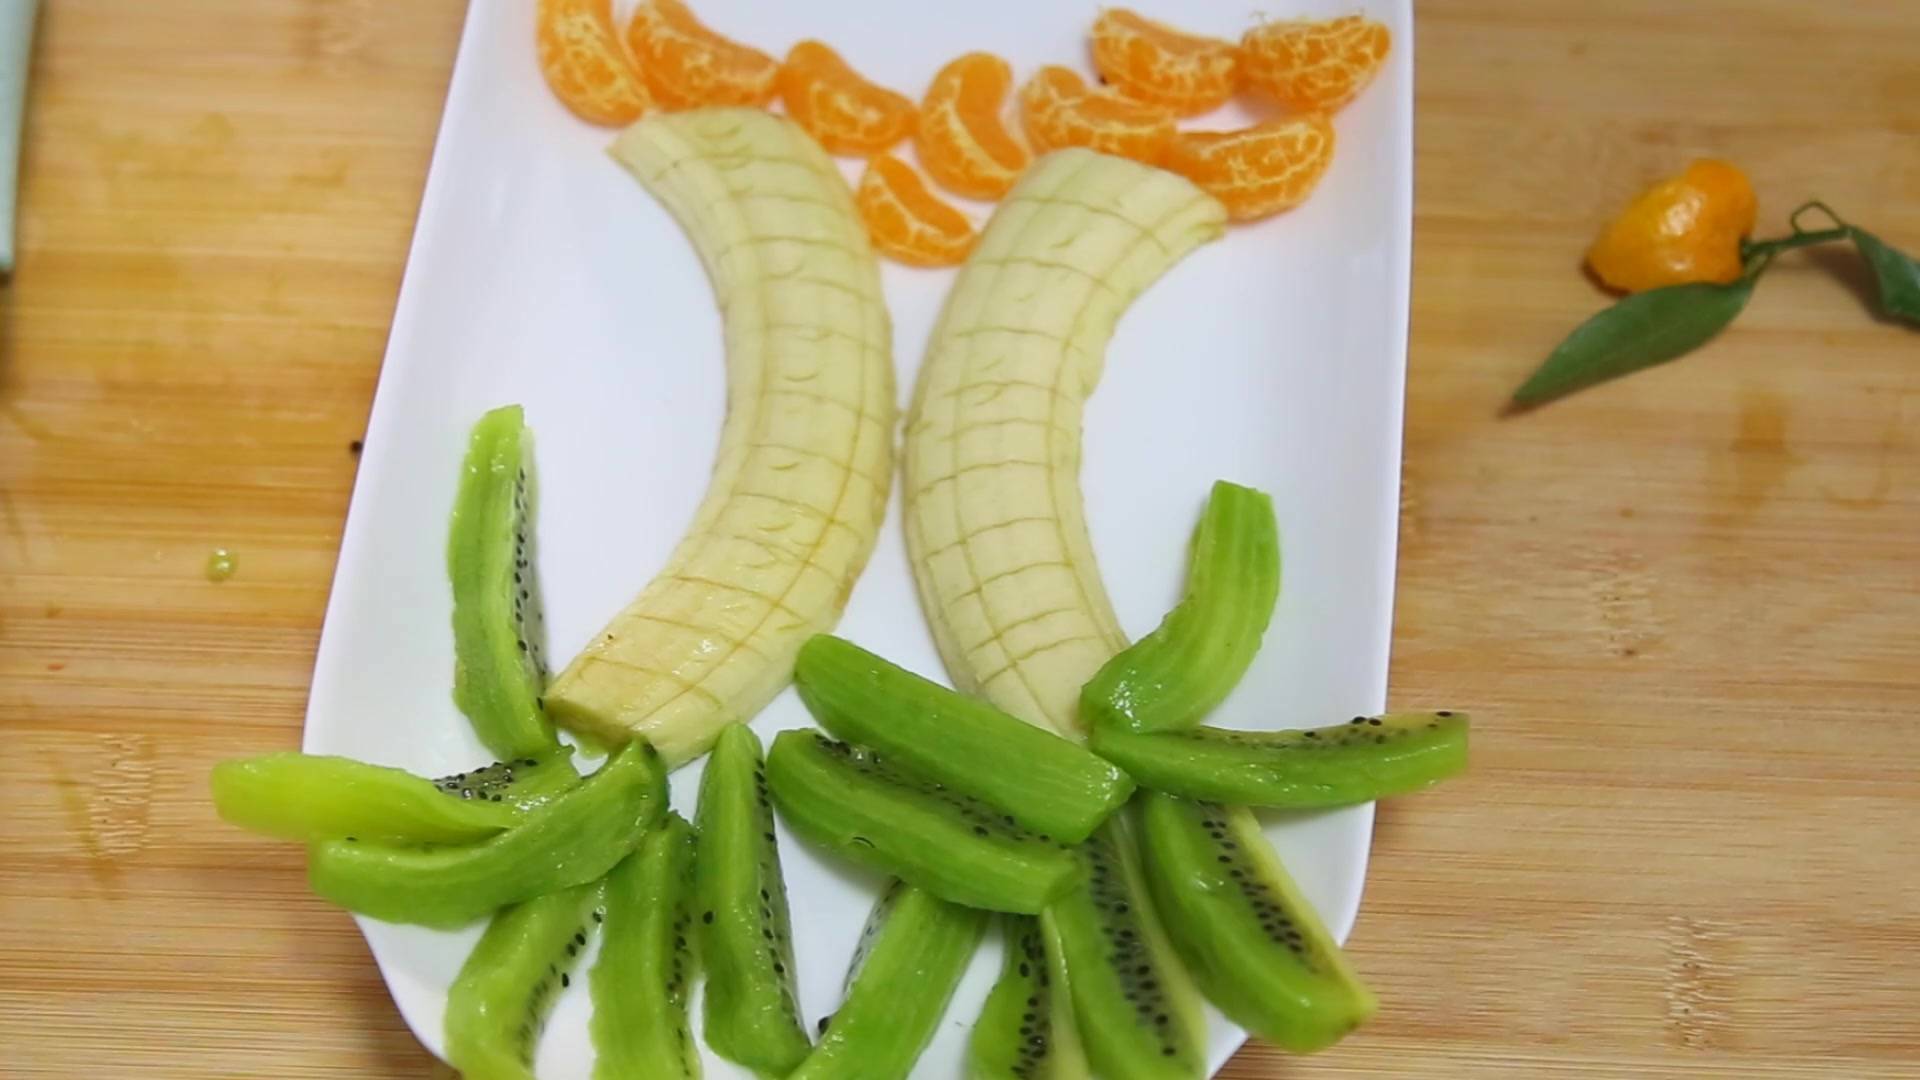 香蕉橘子猕猴桃切一切摆一摆创意水果拼盘来了